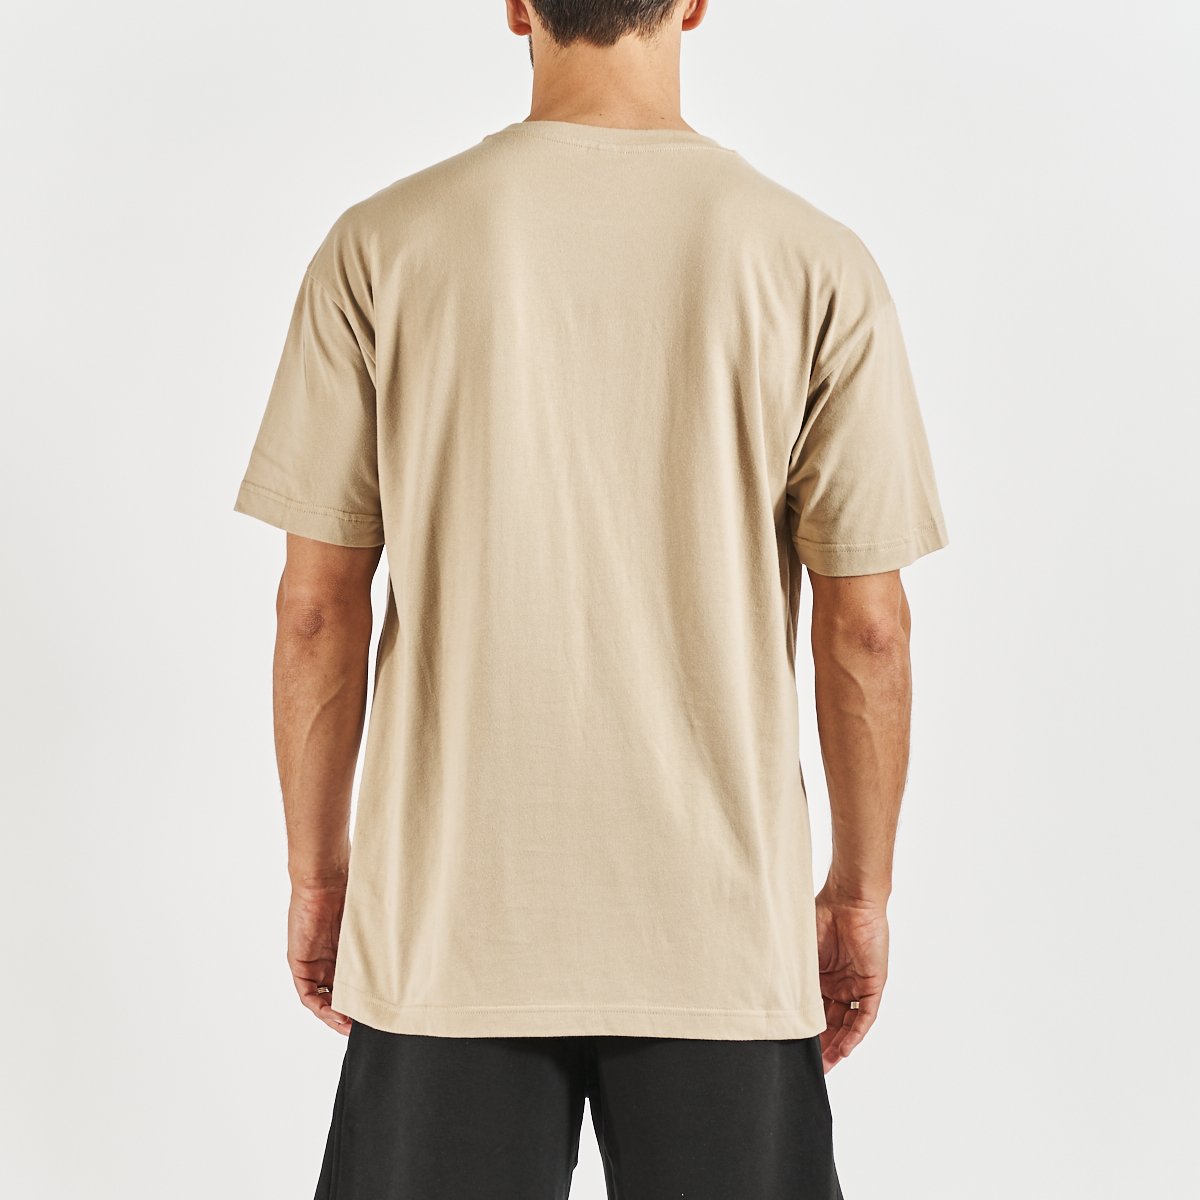 Camiseta Ewan hombre beige - Imagen 3